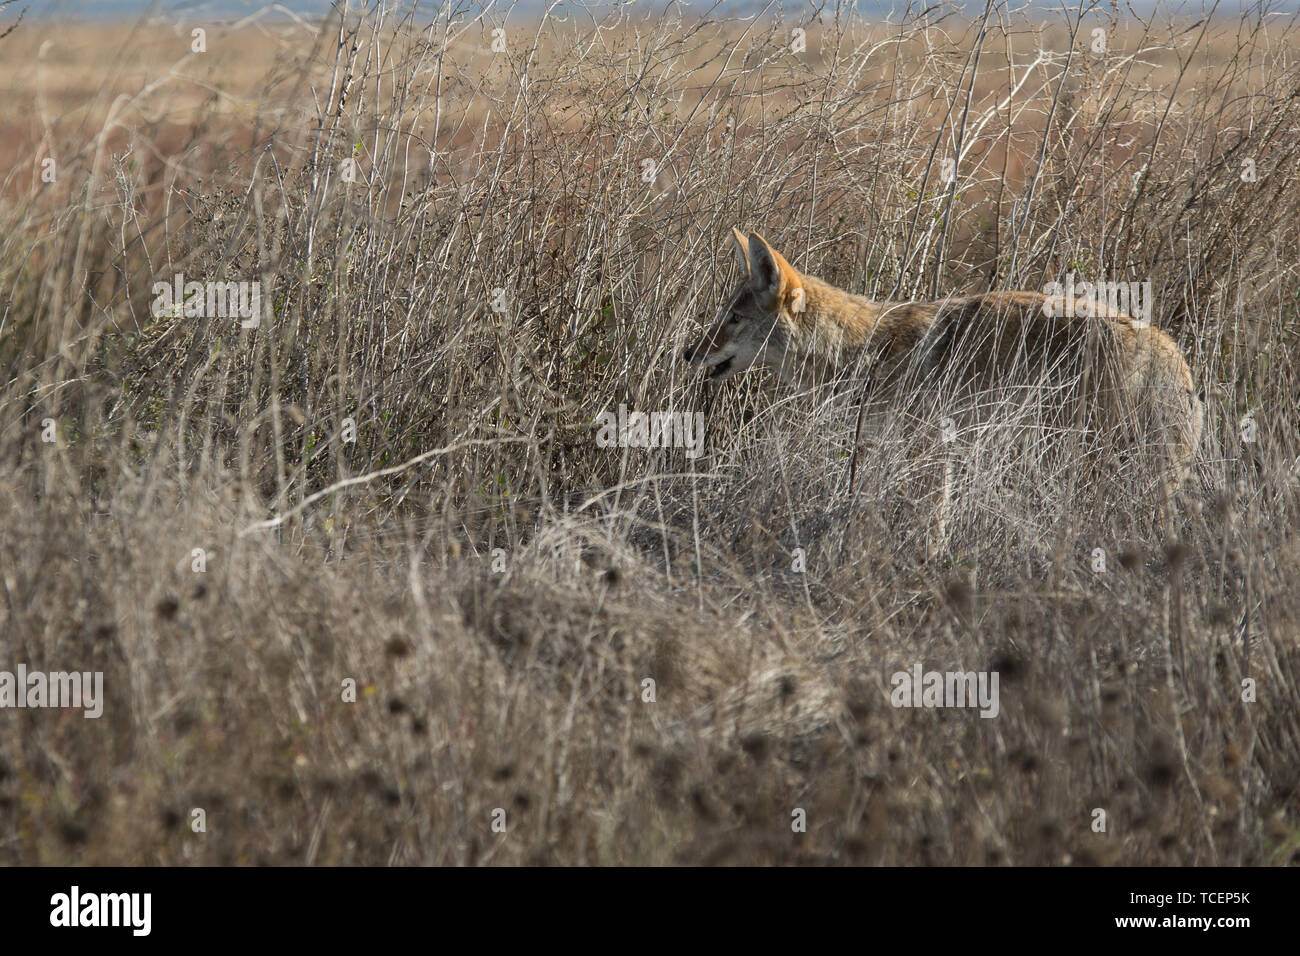 La chasse au coyote dans l'herbe haute Banque D'Images